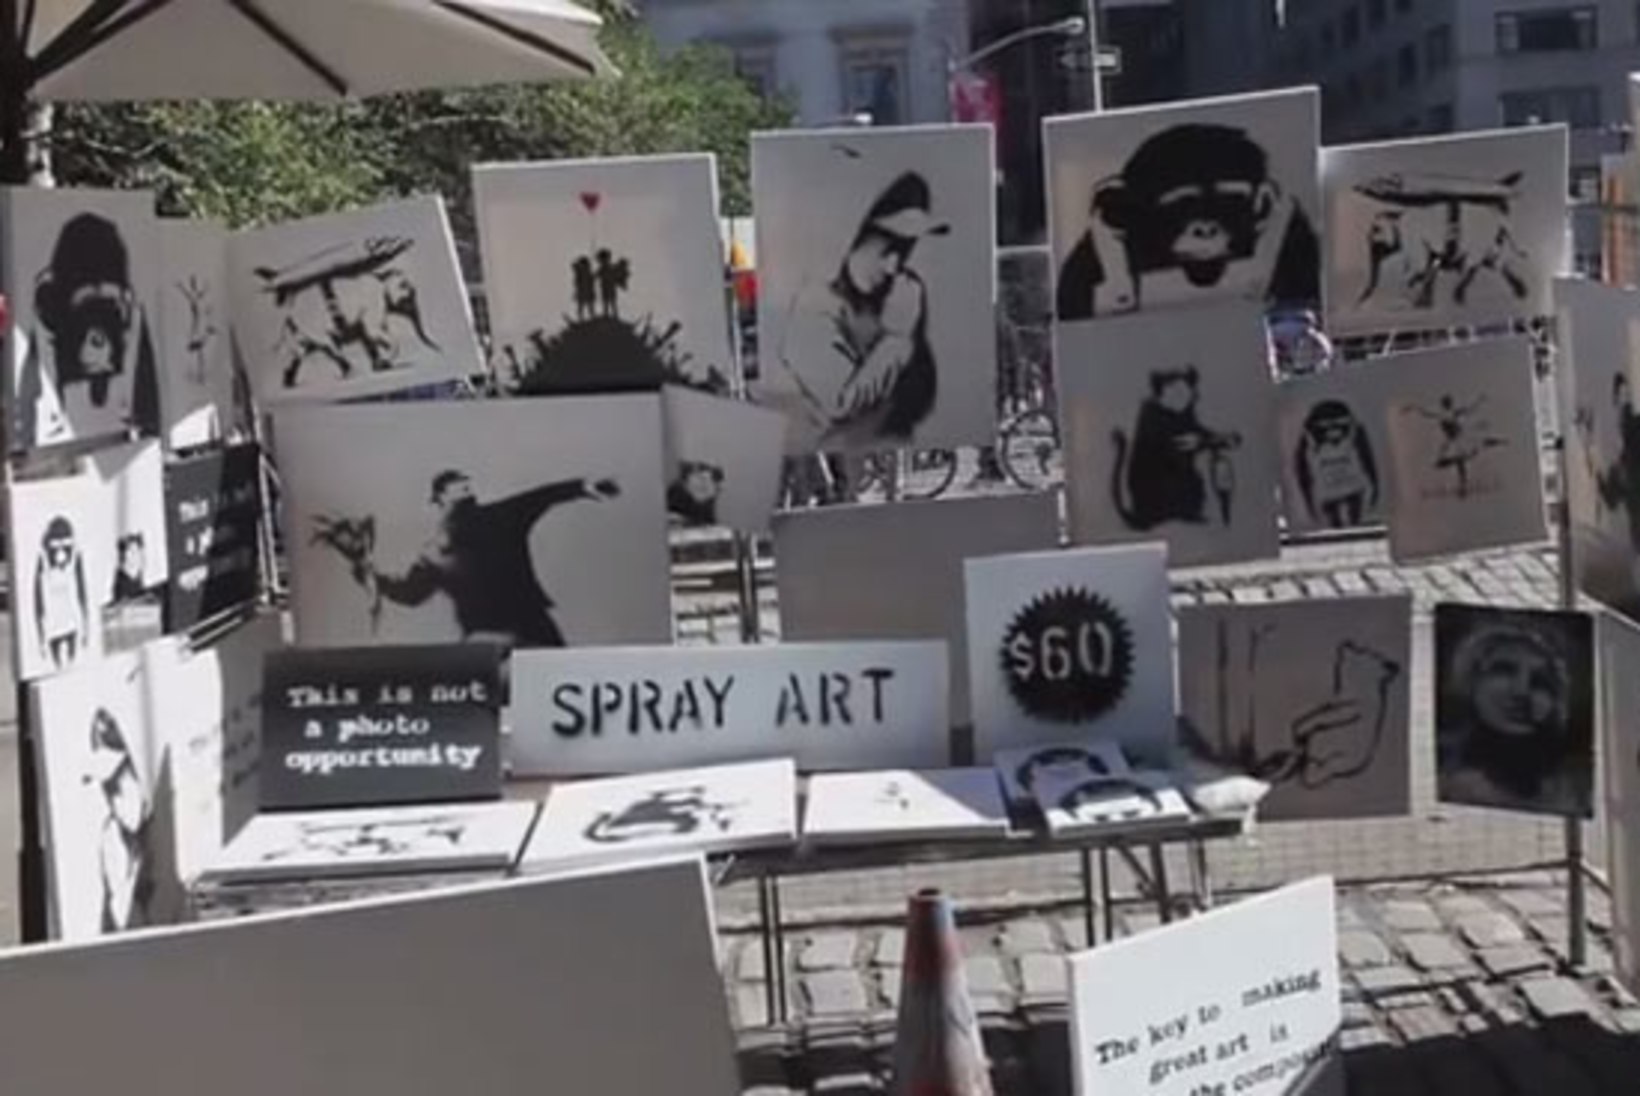 Kuulsa grafitikunstniku uus tüng: vähemalt 30 000 dollarit maksvaid pilte müüdi tänaval 60 dollariga